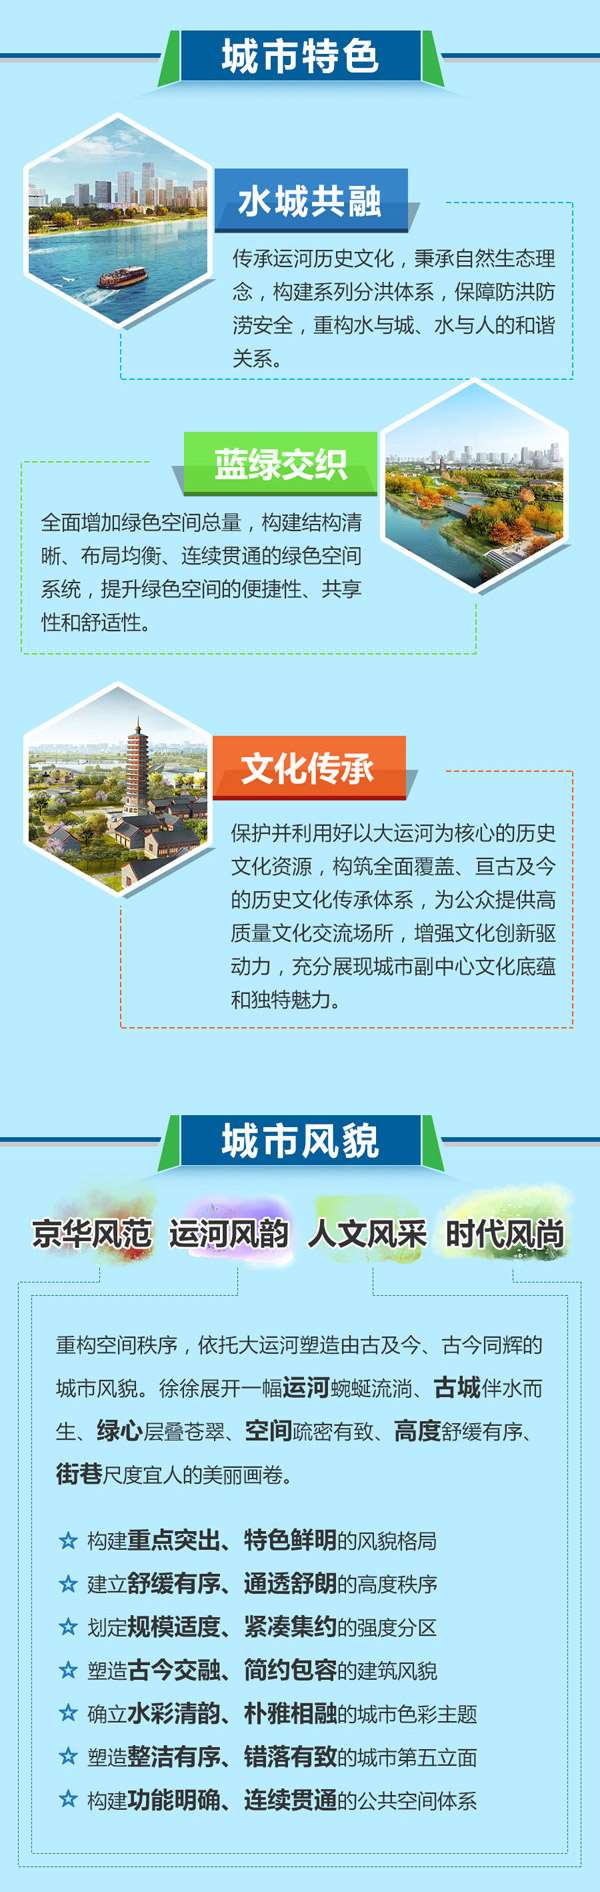 北京城市副中心有了设计图 常住人口控制在130万以内